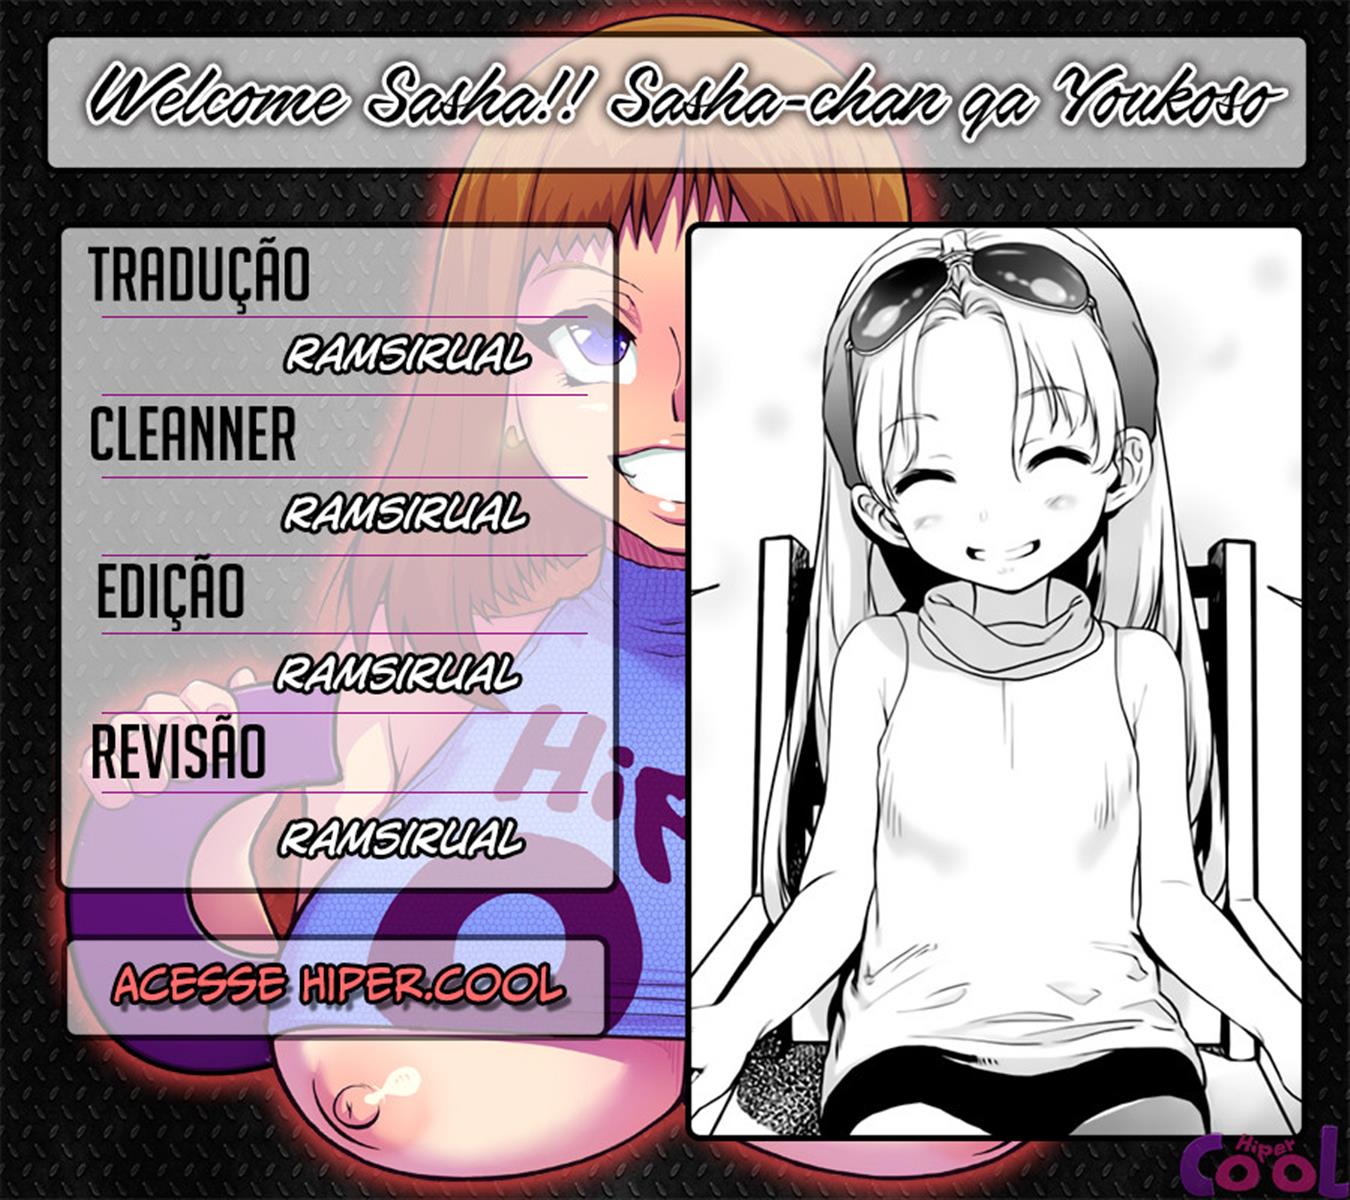 Welcome Sasha!! Sasha-chan ga Youkoso